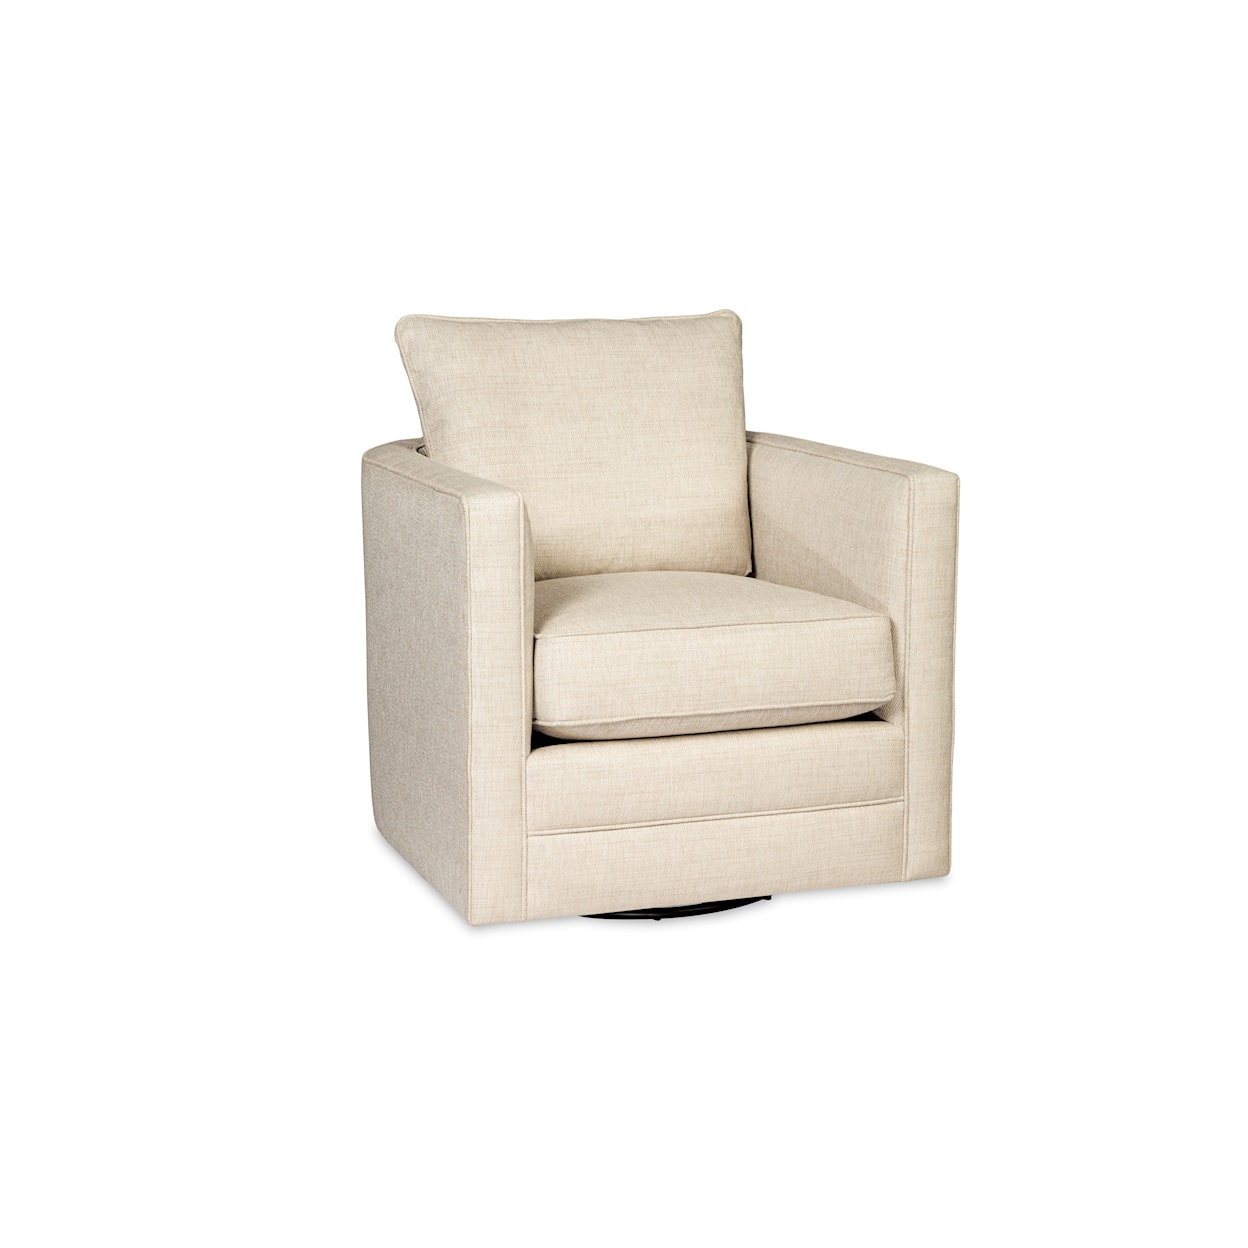 Craftmaster 018410 Swivel Glider Chair